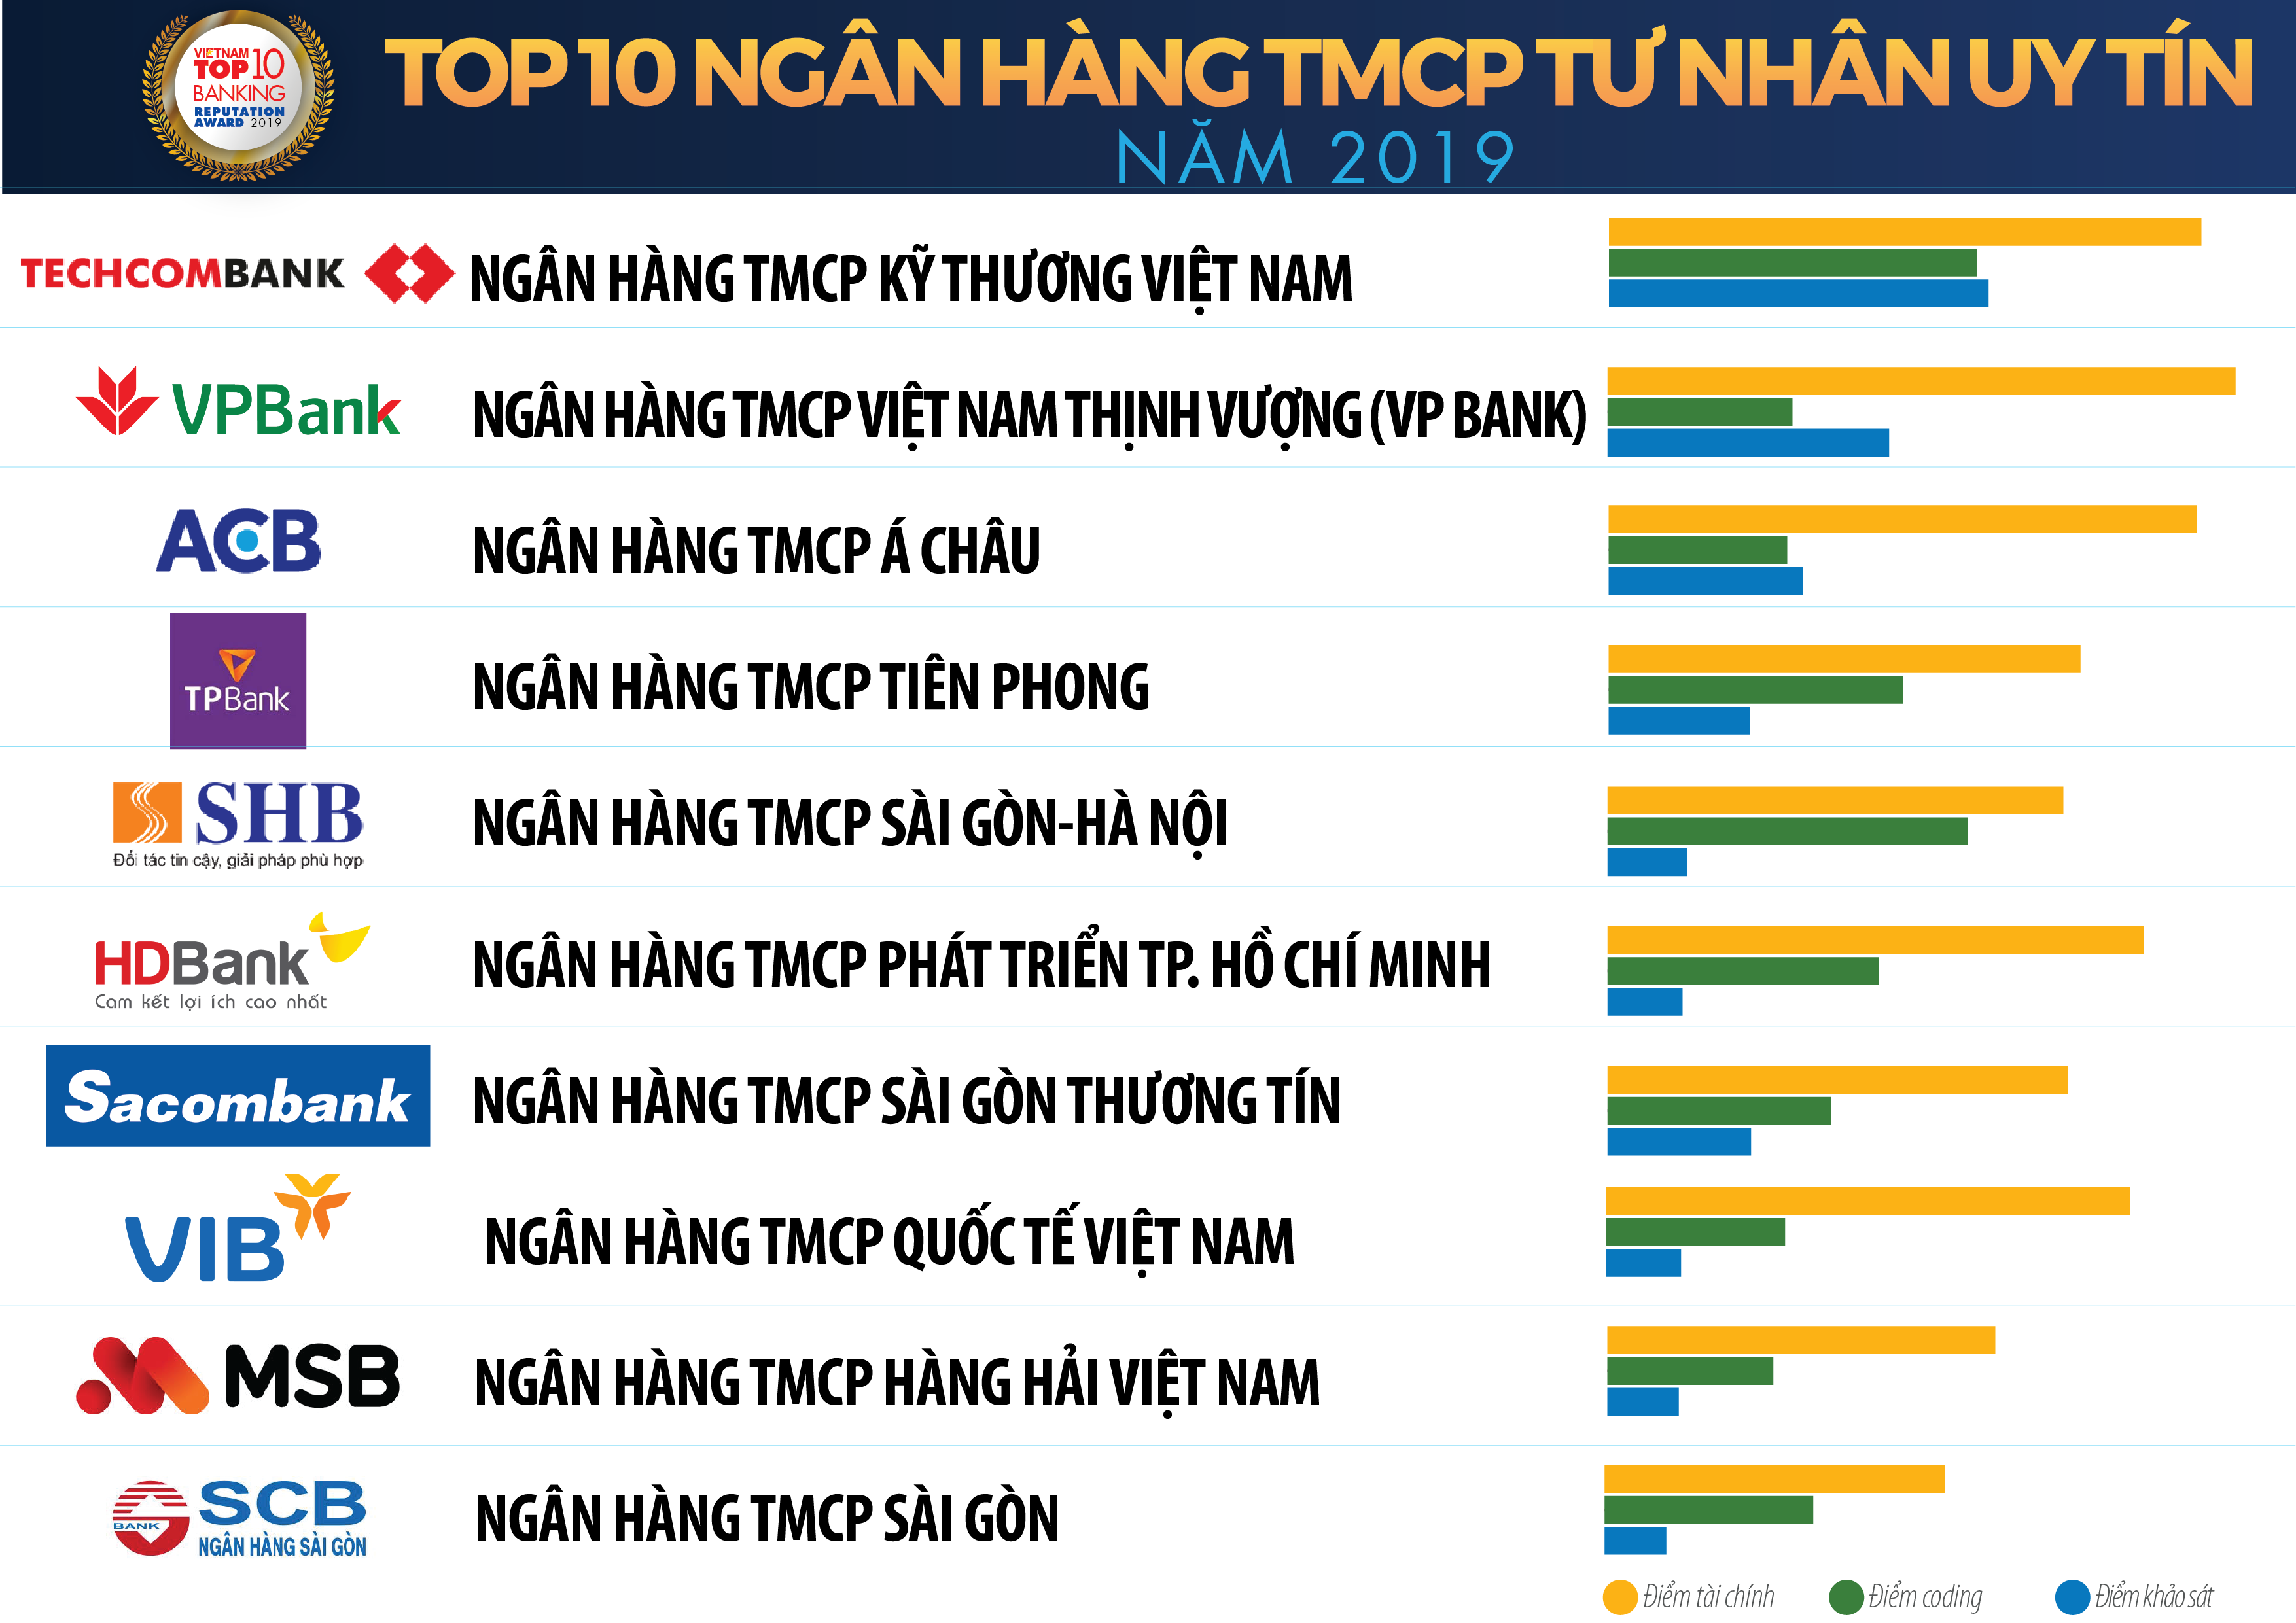 Top 10 Ngân hàng thương mại Việt Nam uy tín năm 2019